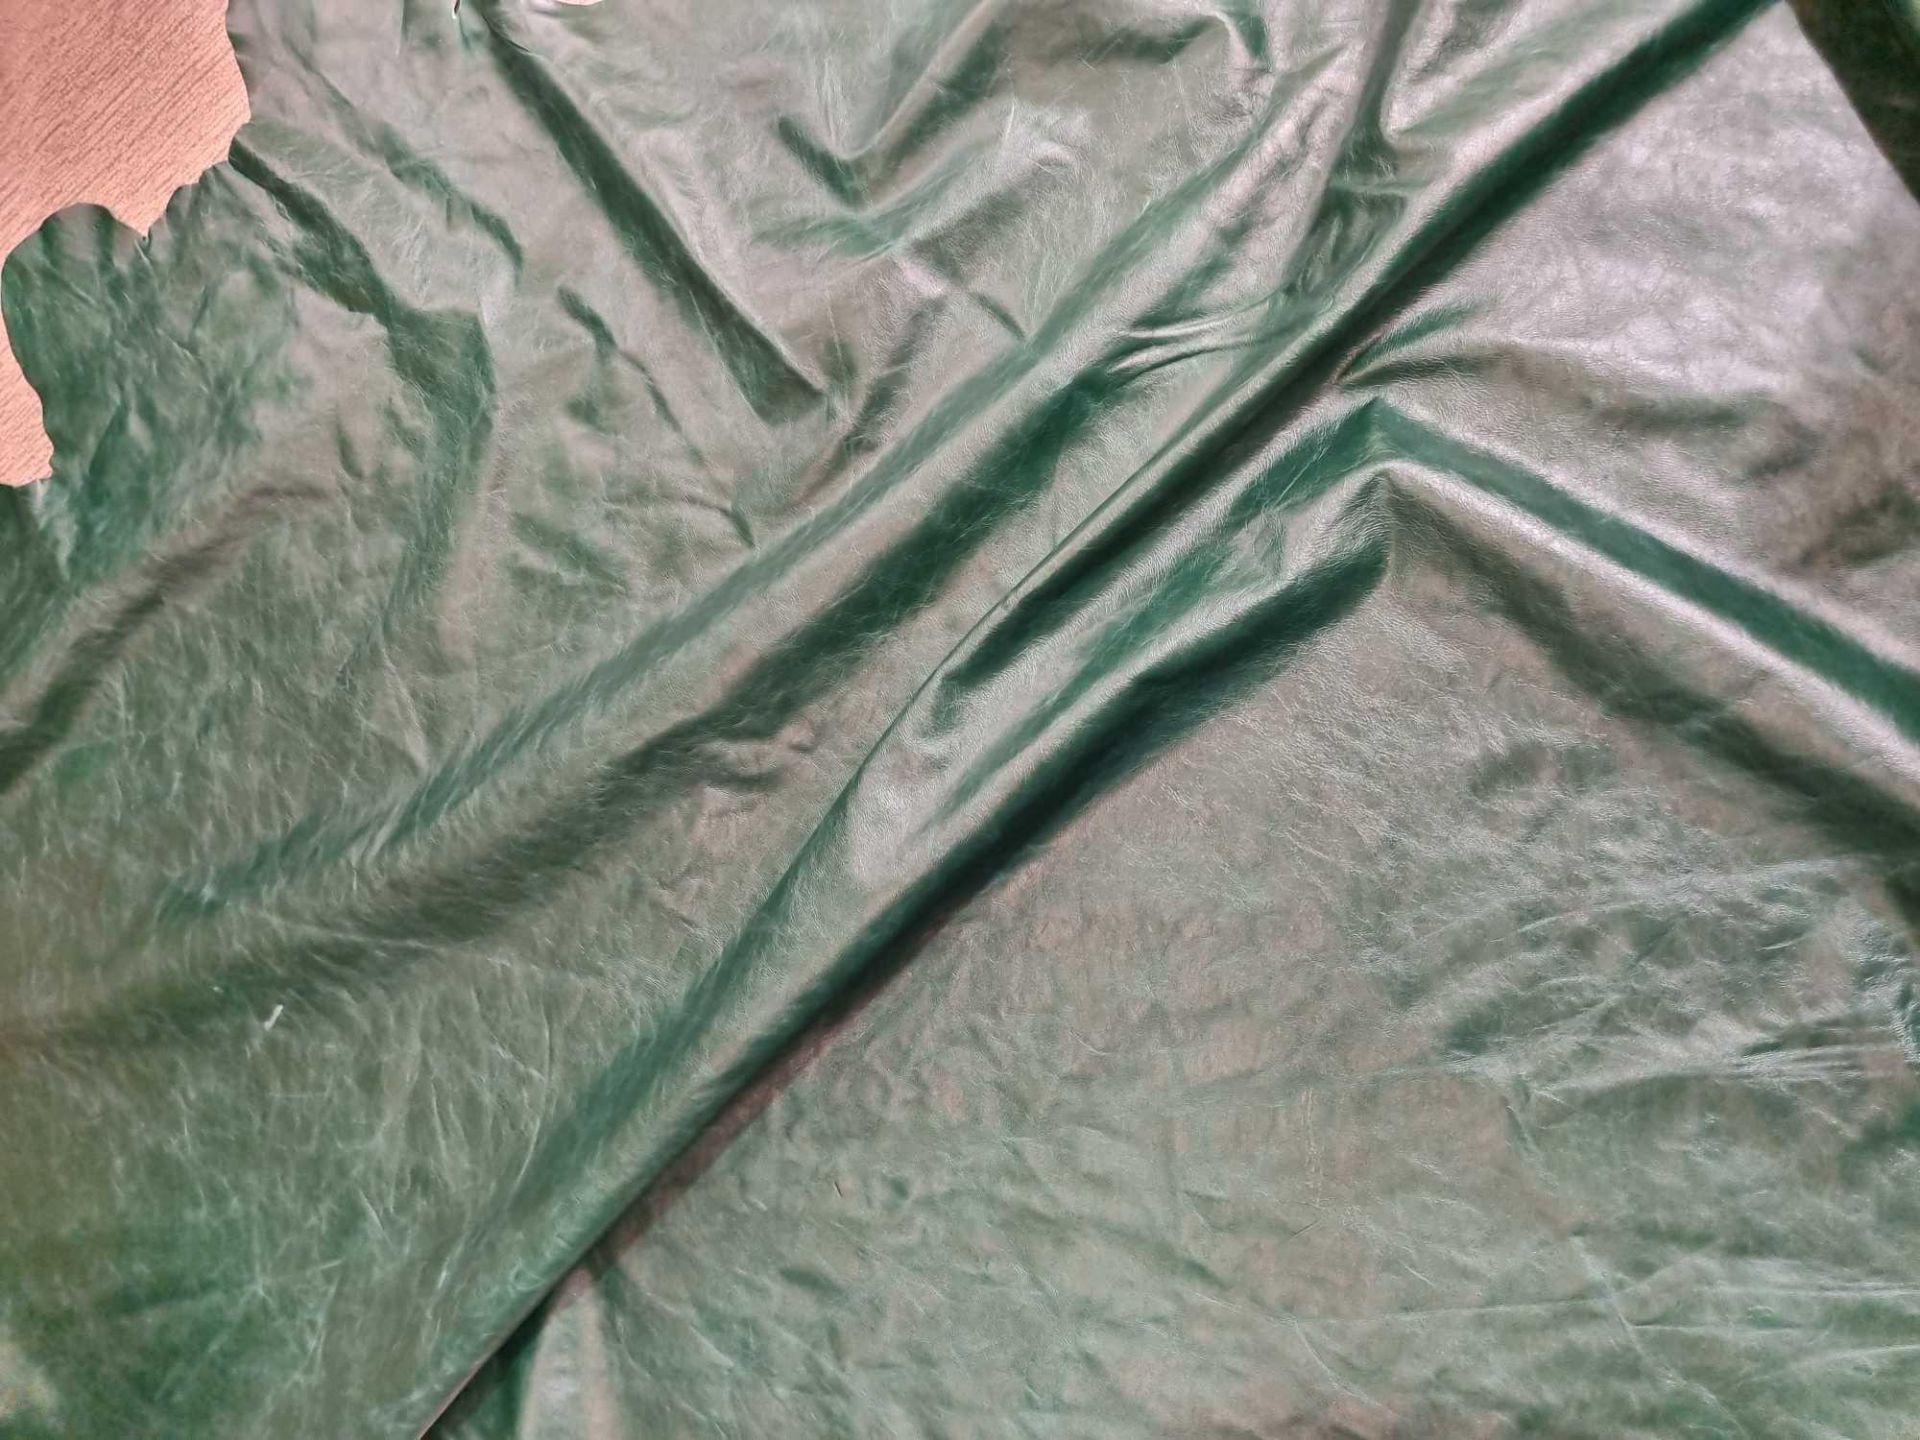 Yarwood Heritage Fern Leather Hide approximately 2.4mÂ² 2 x 1.2cm - Image 3 of 3